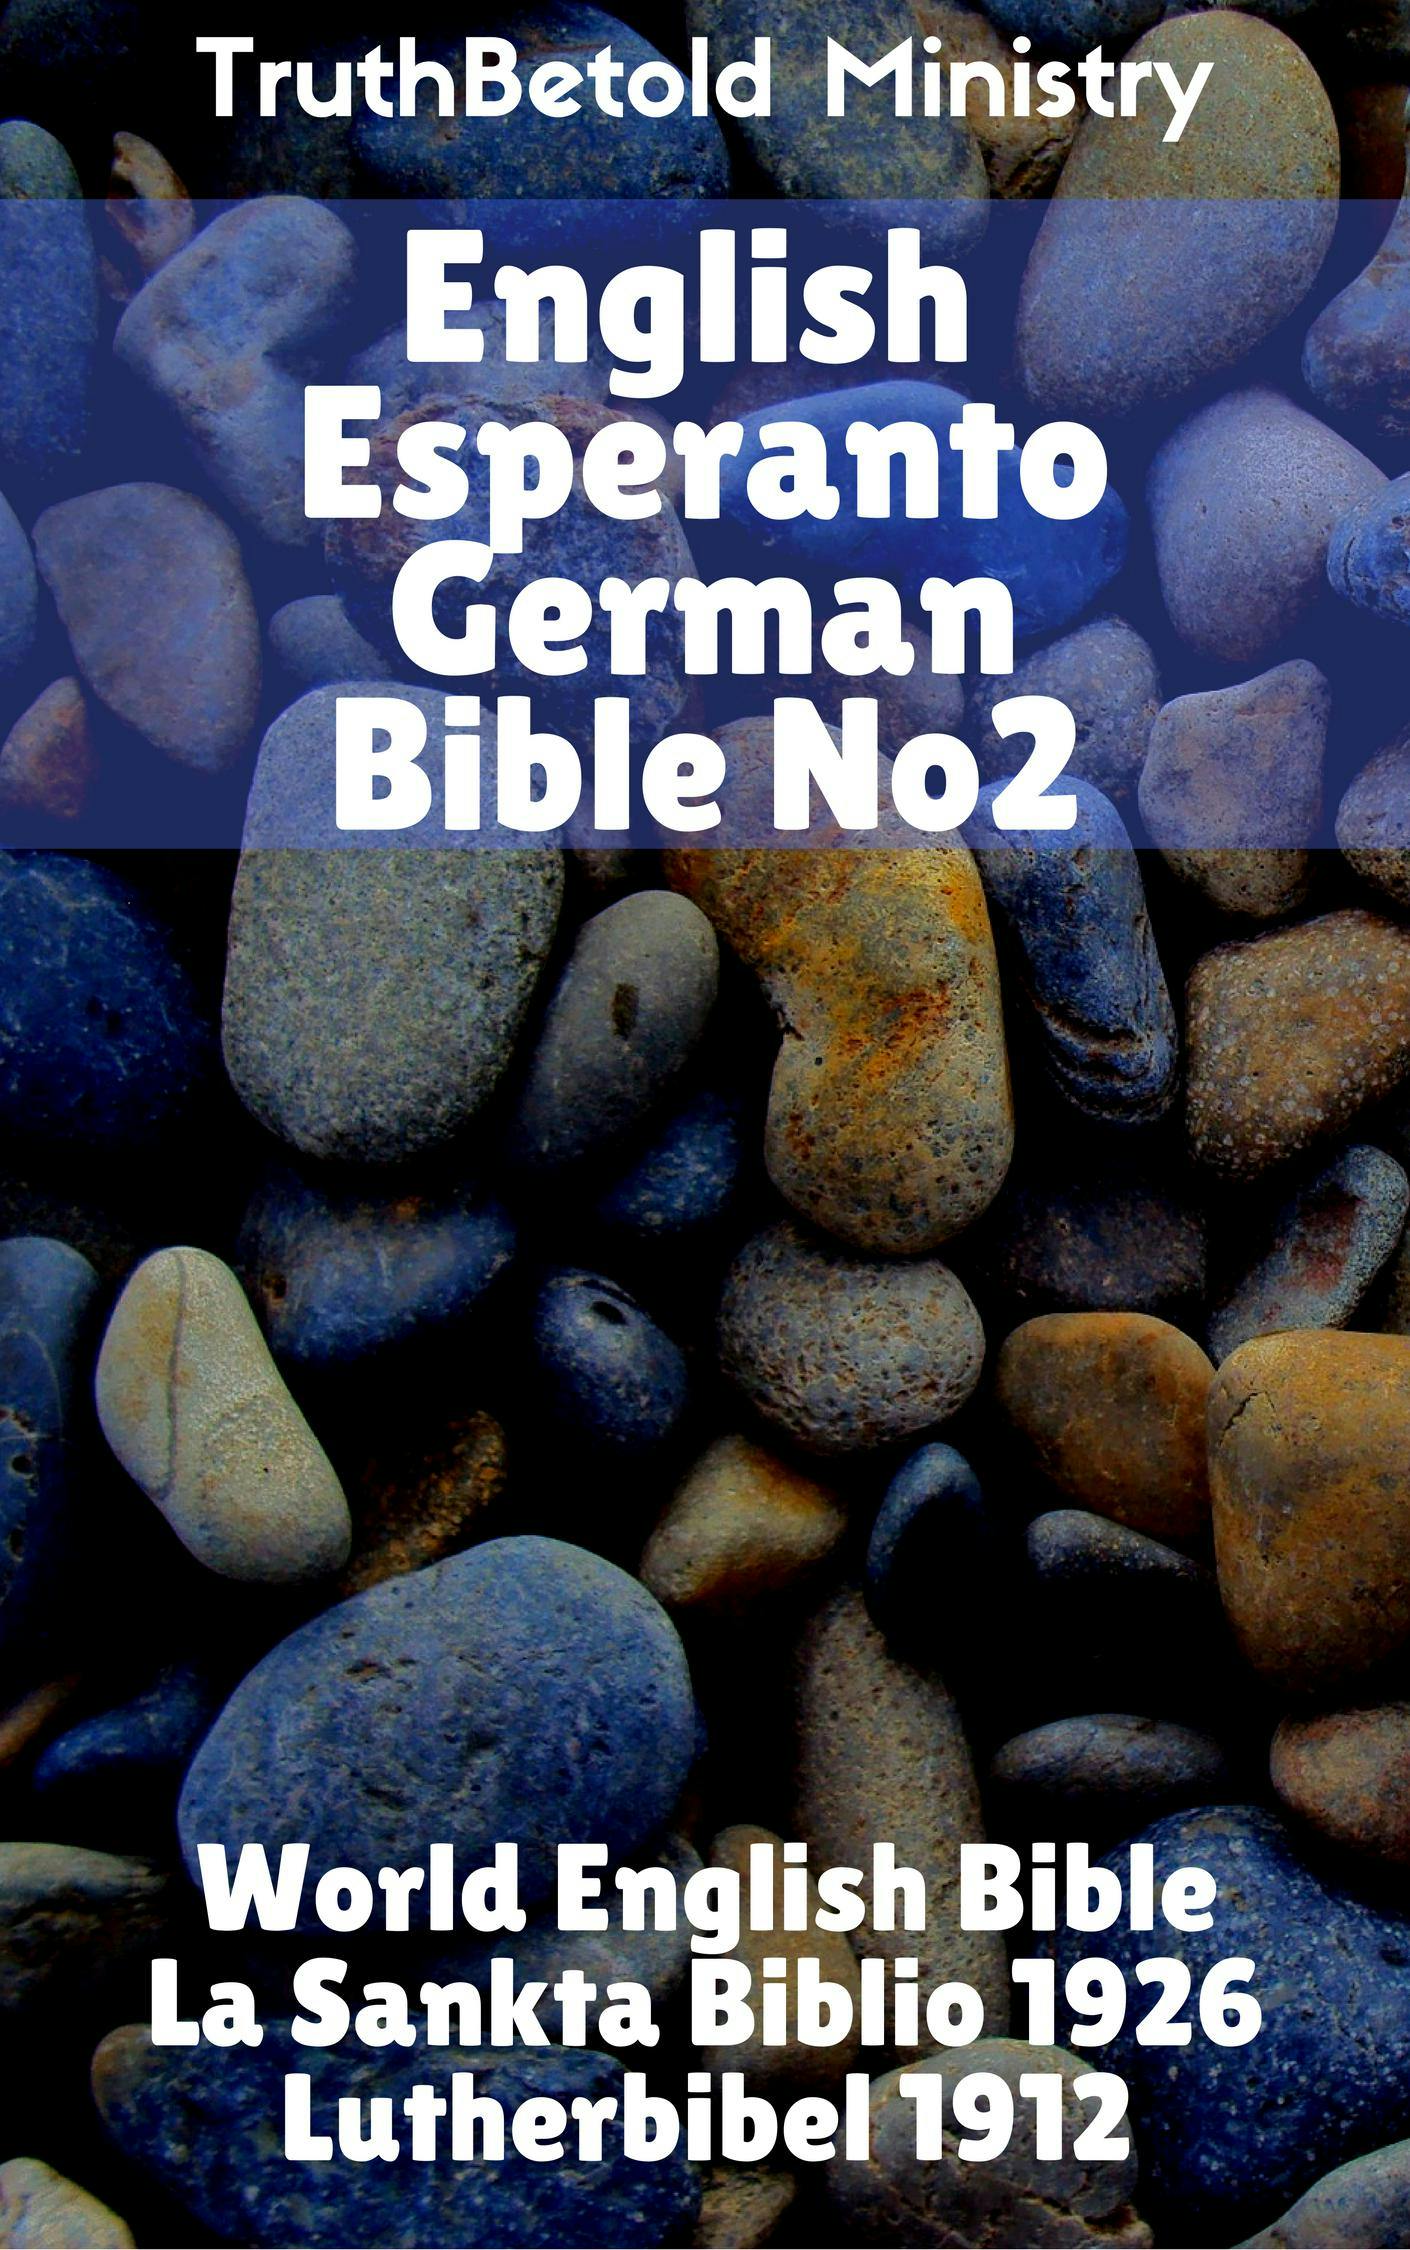 English Esperanto German Bible No2 - undefined